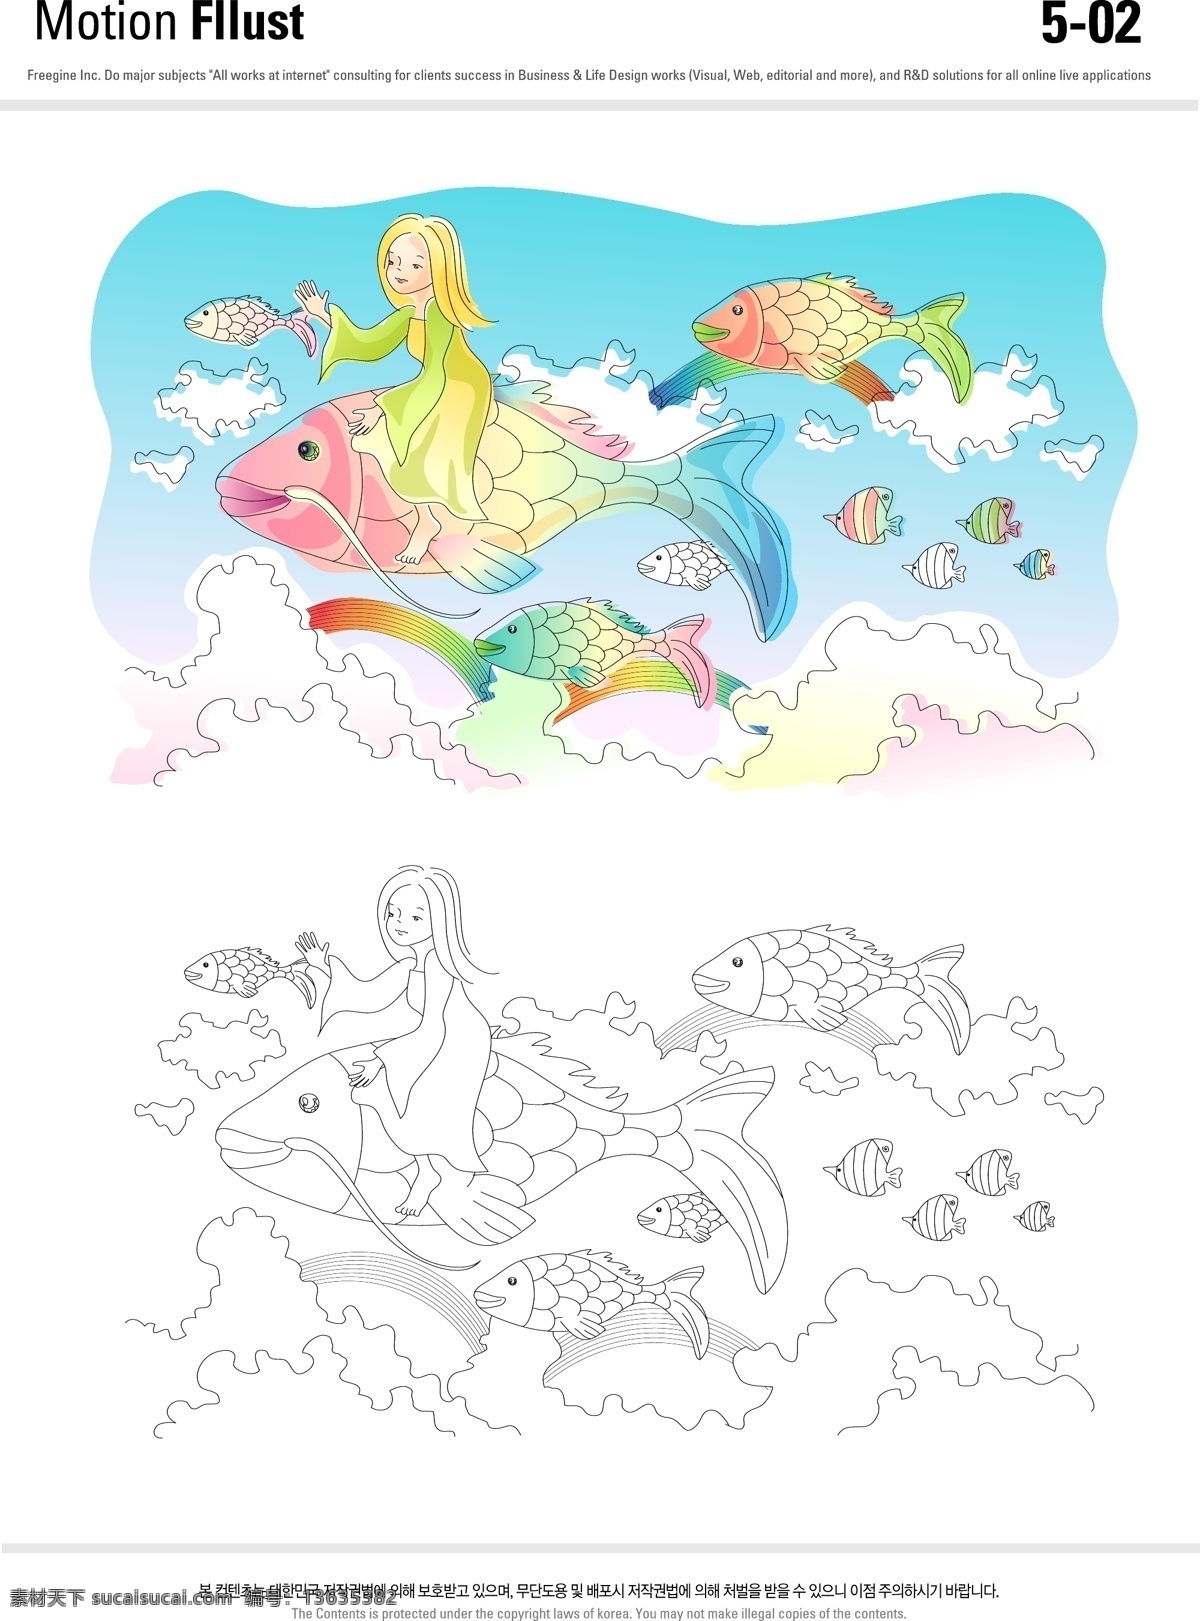 儿童梦幻插画 儿童 梦幻 飞鱼 海洋世界 彩虹 海洋云朵 彩色的鱼 城乡风景插画 动漫动画 风景漫画